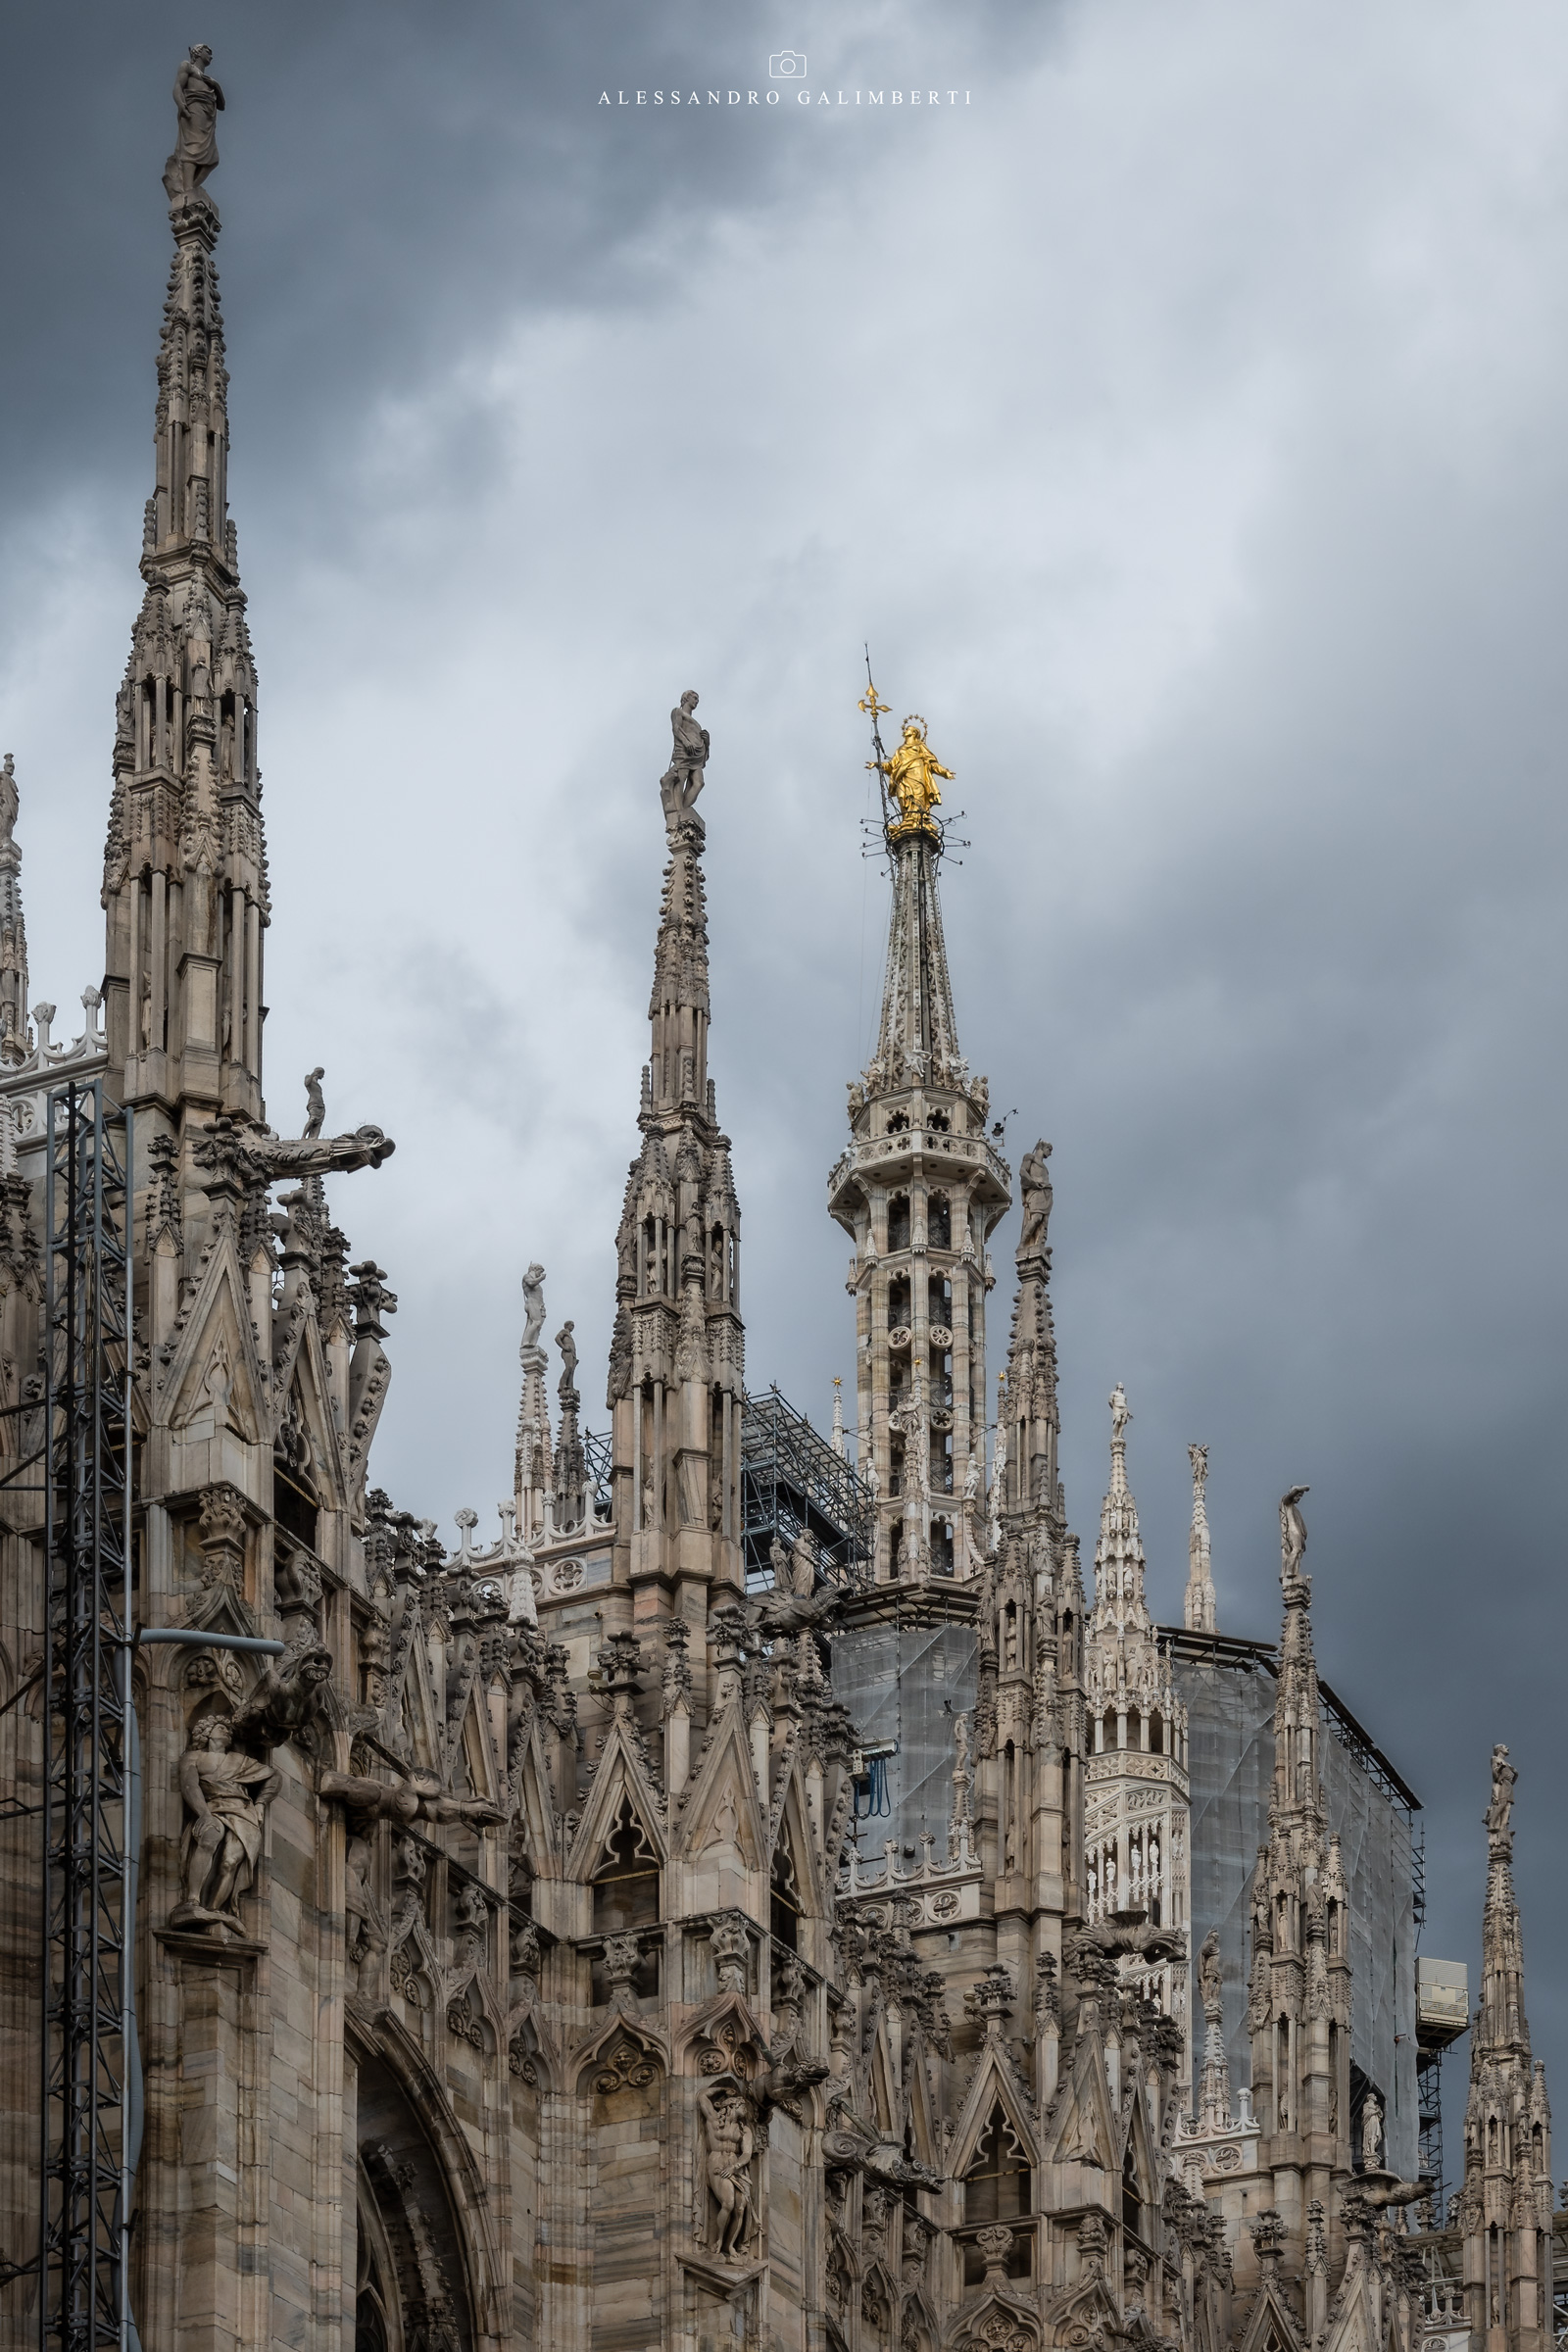 Tra le guglie - Duomo di Milano...